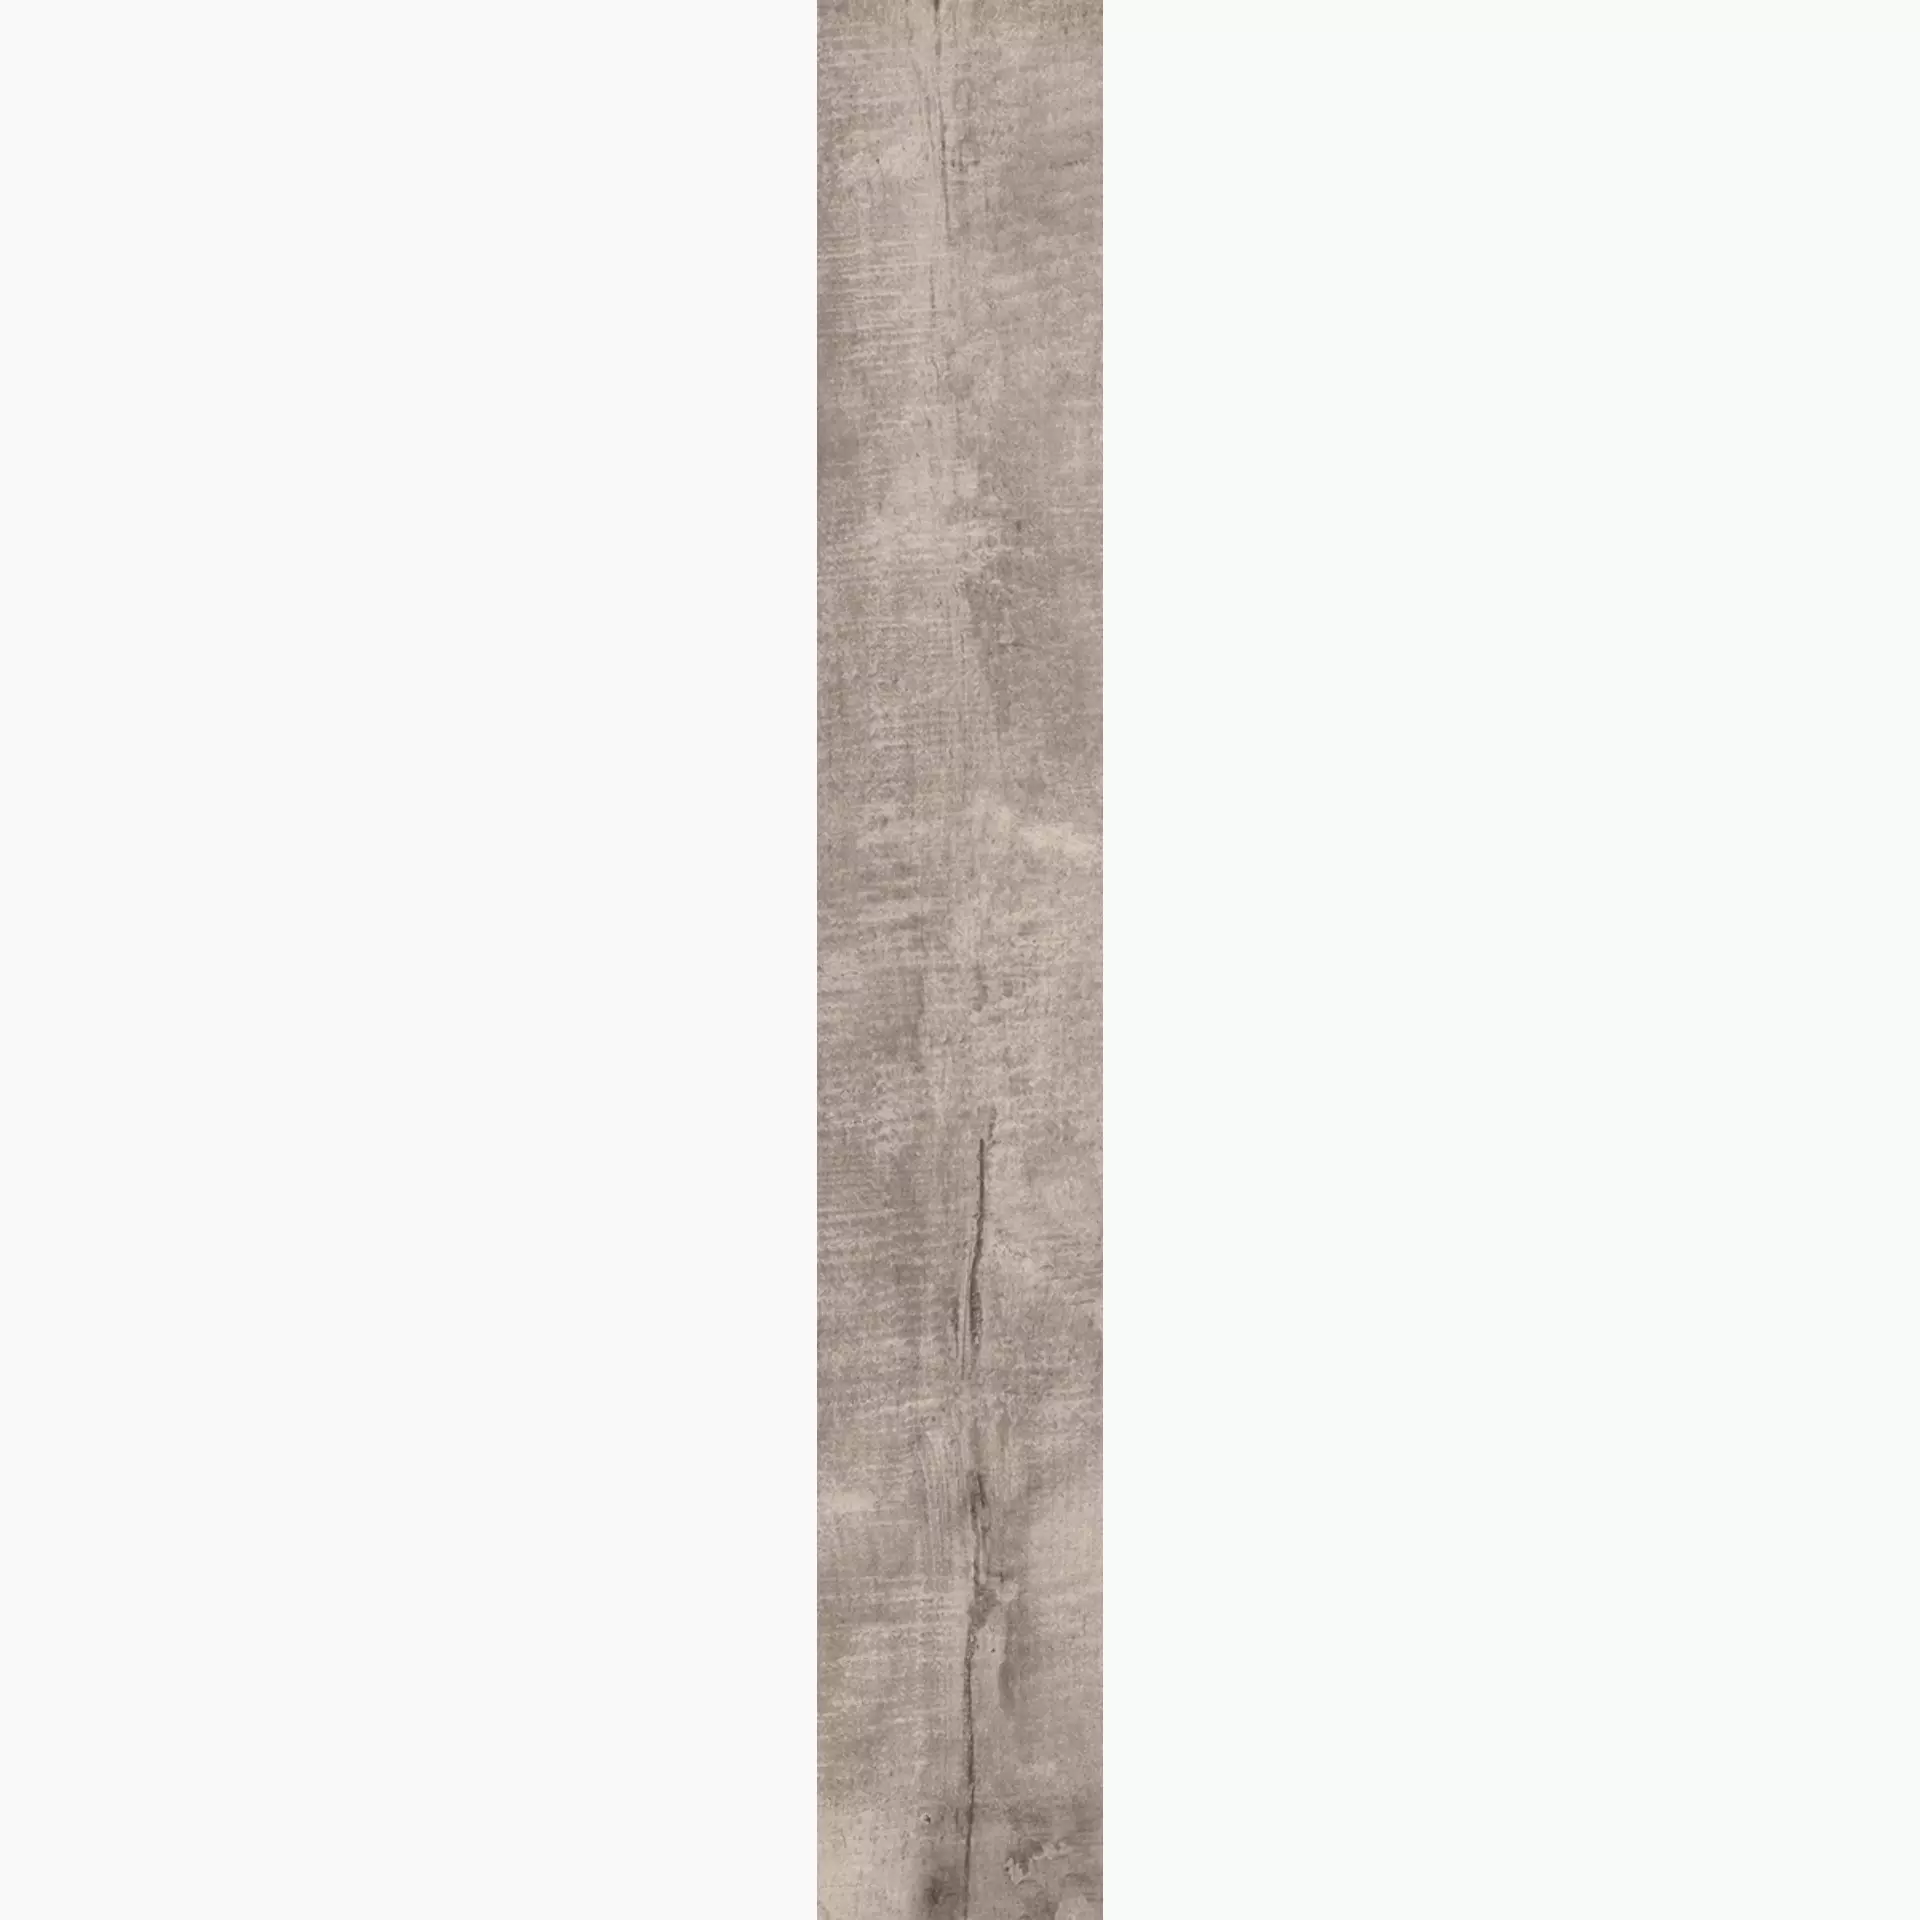 Rondine Aspen Greige Naturale J87751 15x100cm 9,5mm